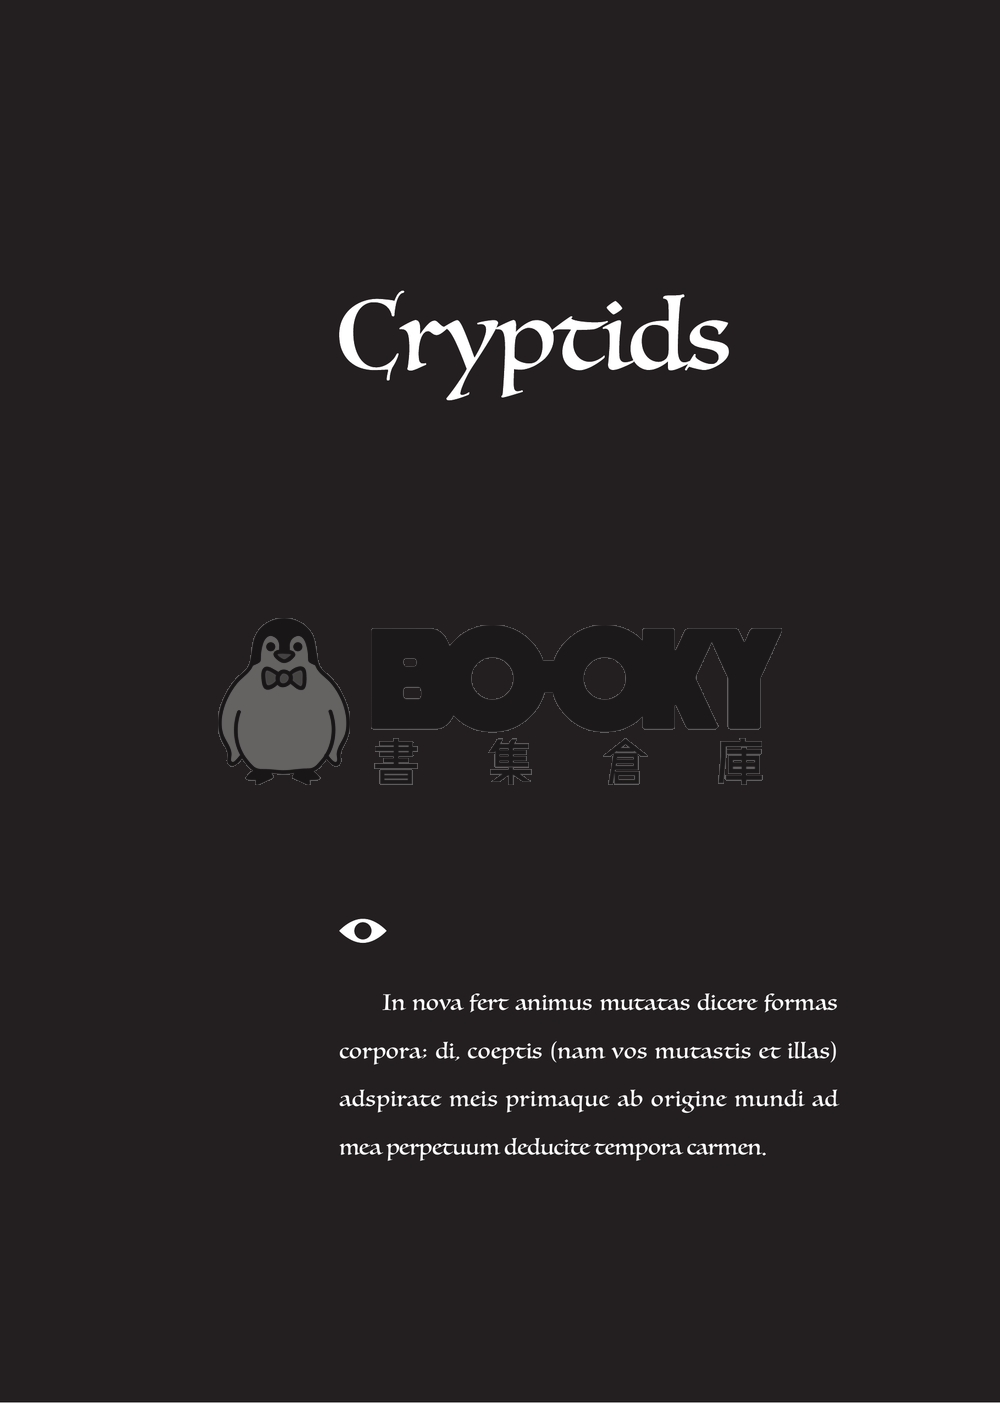 Cryptids 試閱圖片